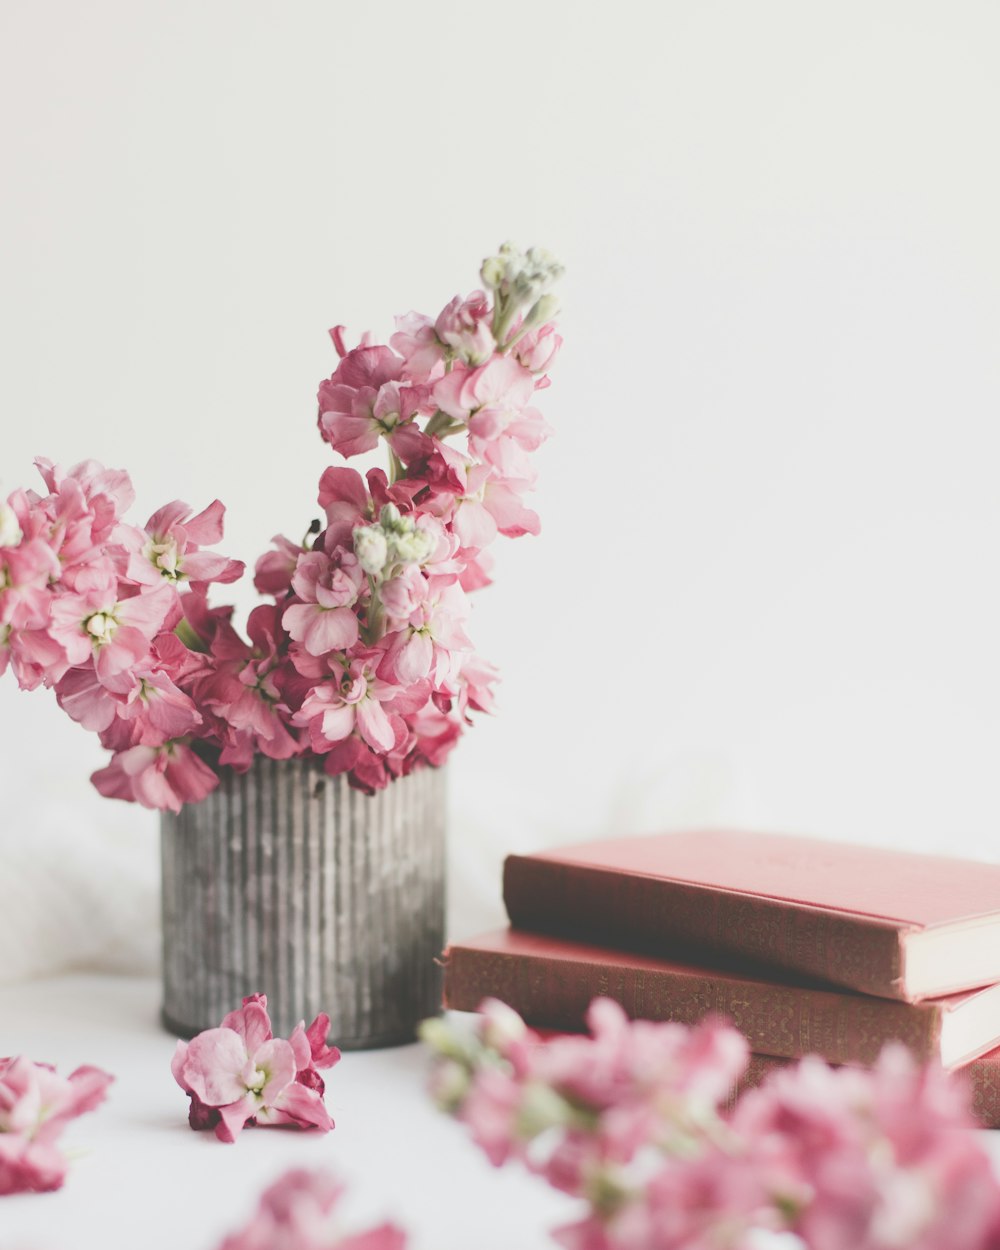 flores cor-de-rosa no vaso de madeira marrom